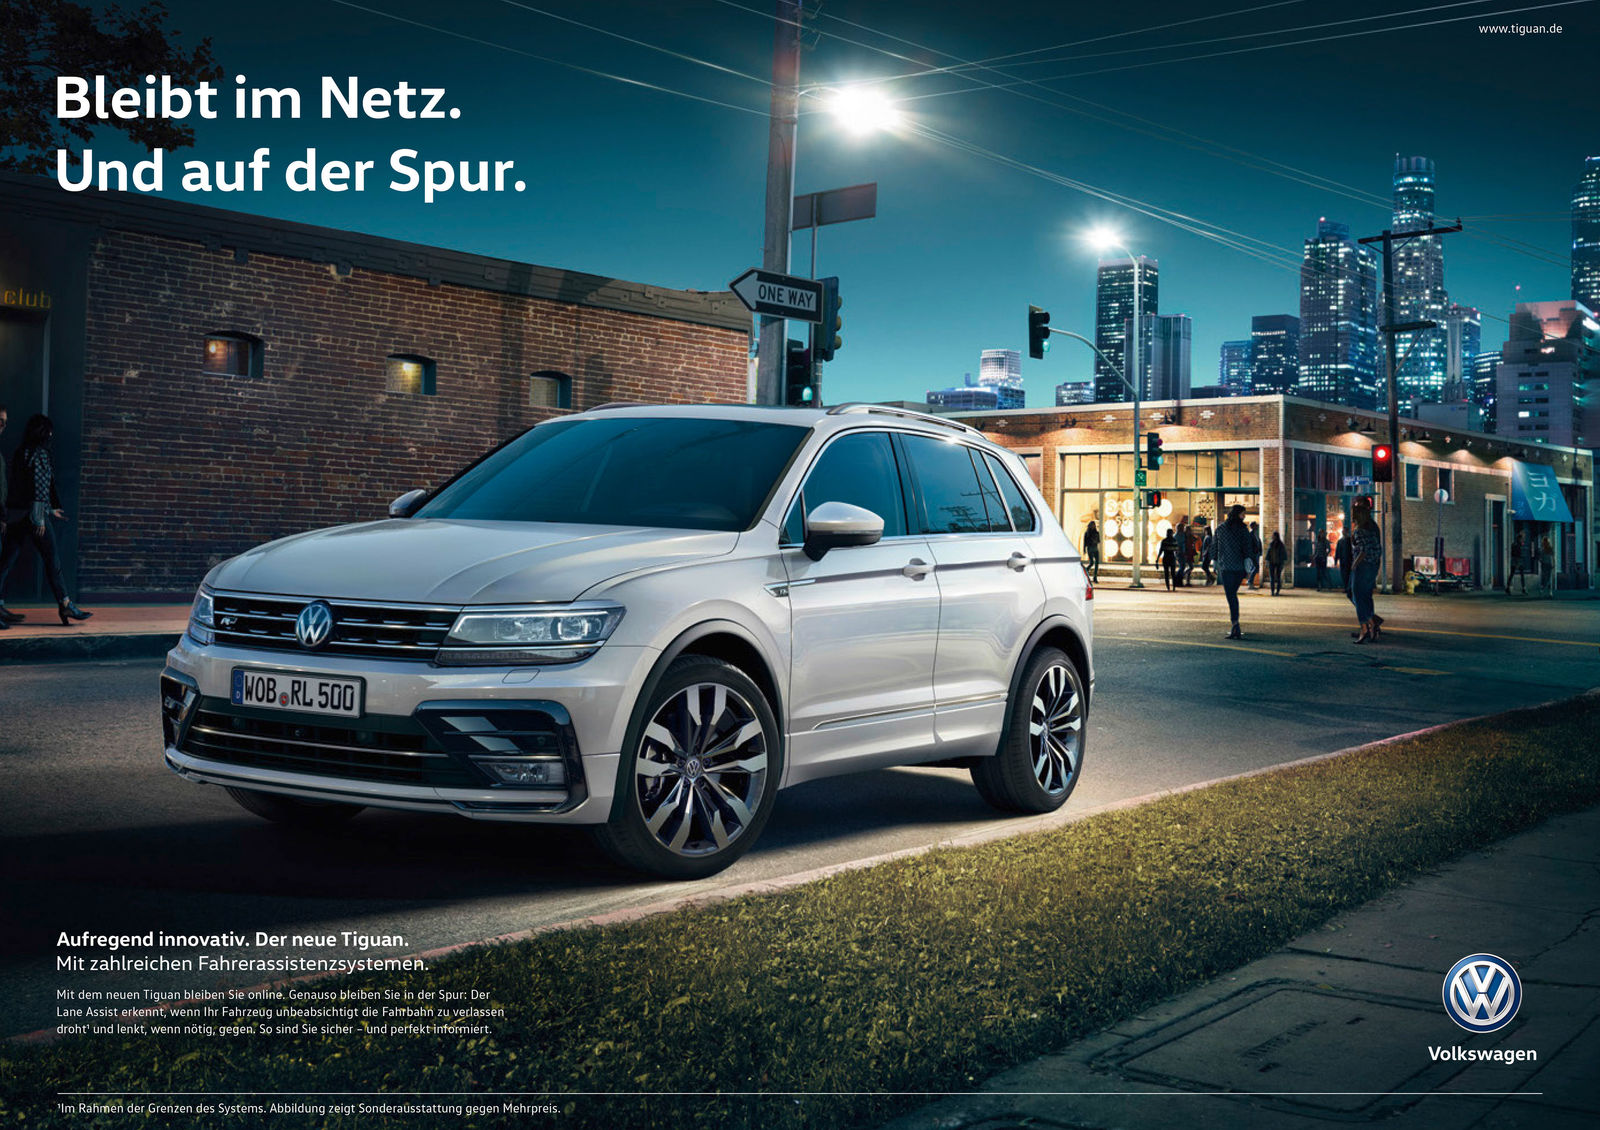 „Aufregend innovativ" – Volkswagen startet Kampagne zur weltweiten Markteinführung des neuen Tiguan